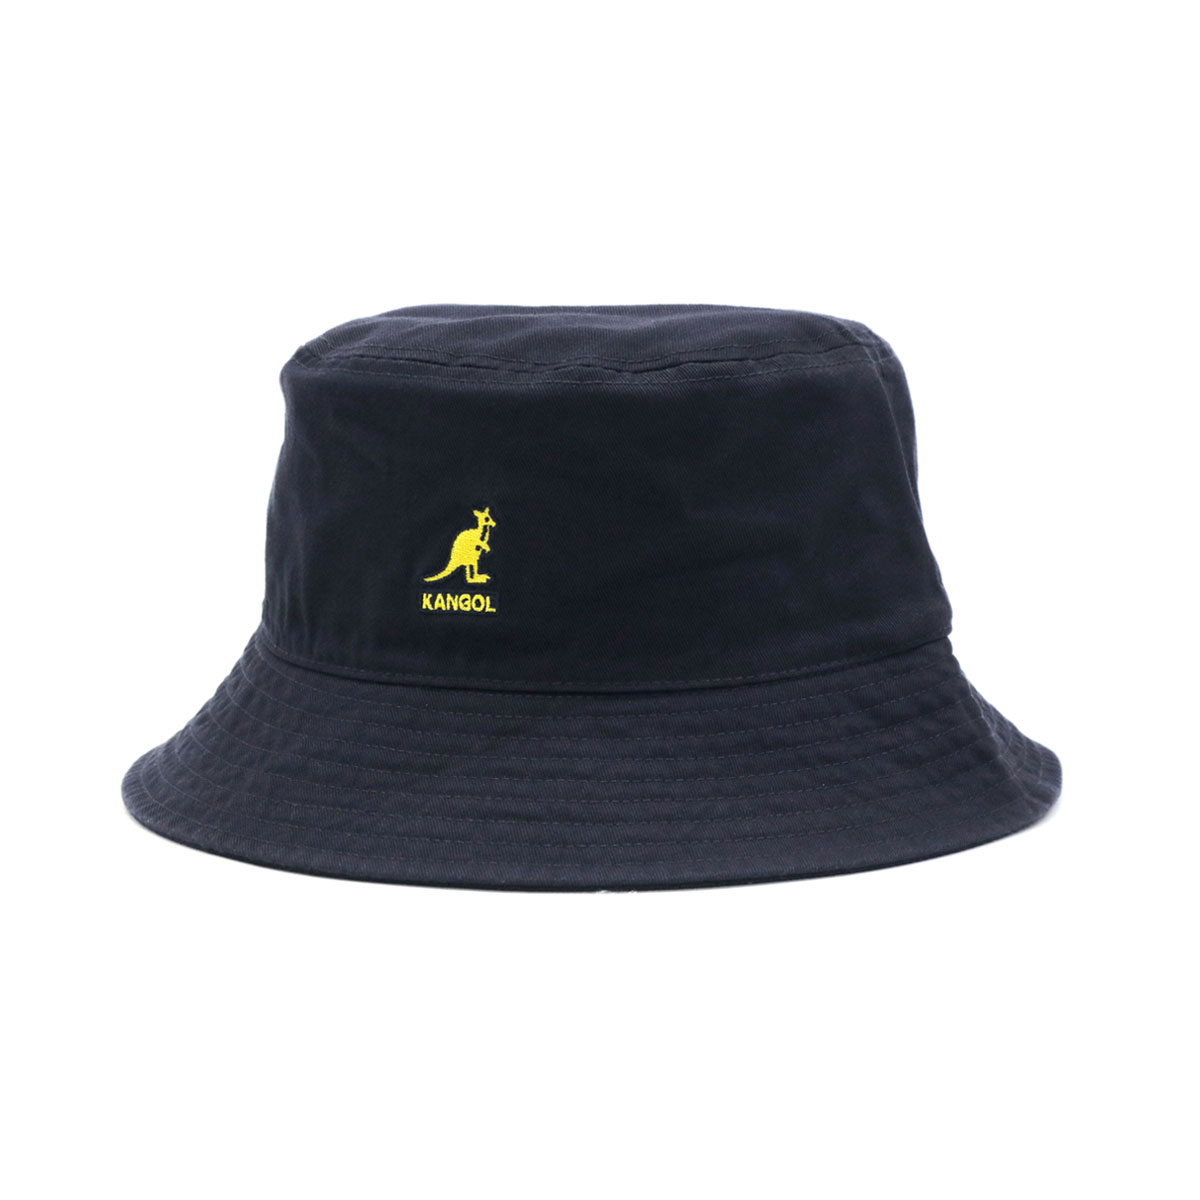 カンゴール バケットハット KANGOL Washed Bucket 帽子 バケット ハット アウトドア キャンプ メンズ レディース  100-169215 230-069602